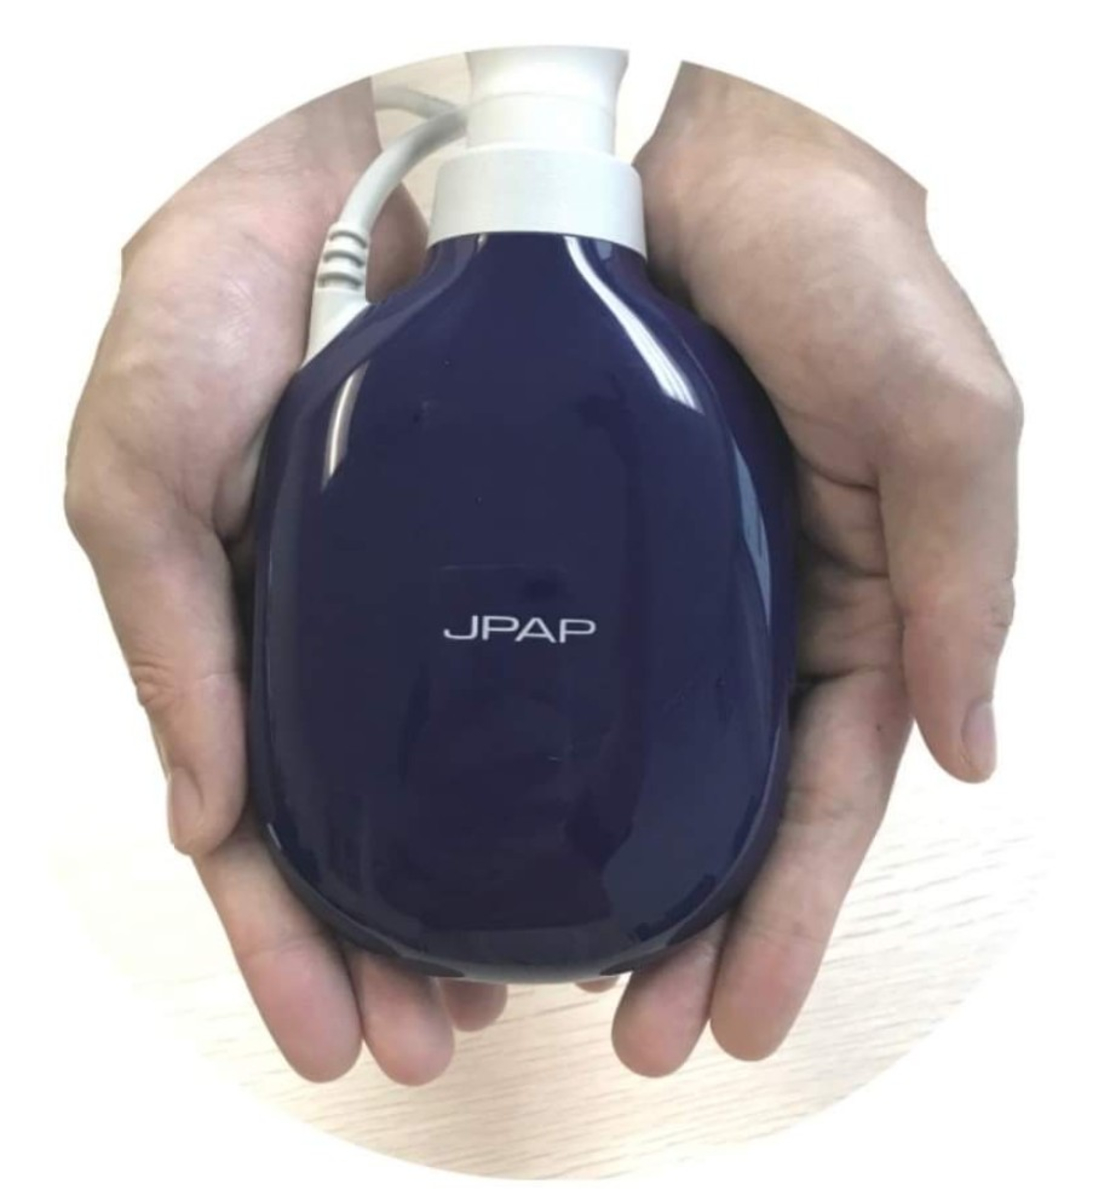  JPAP Auto - תוצרת Metran  (Japan)